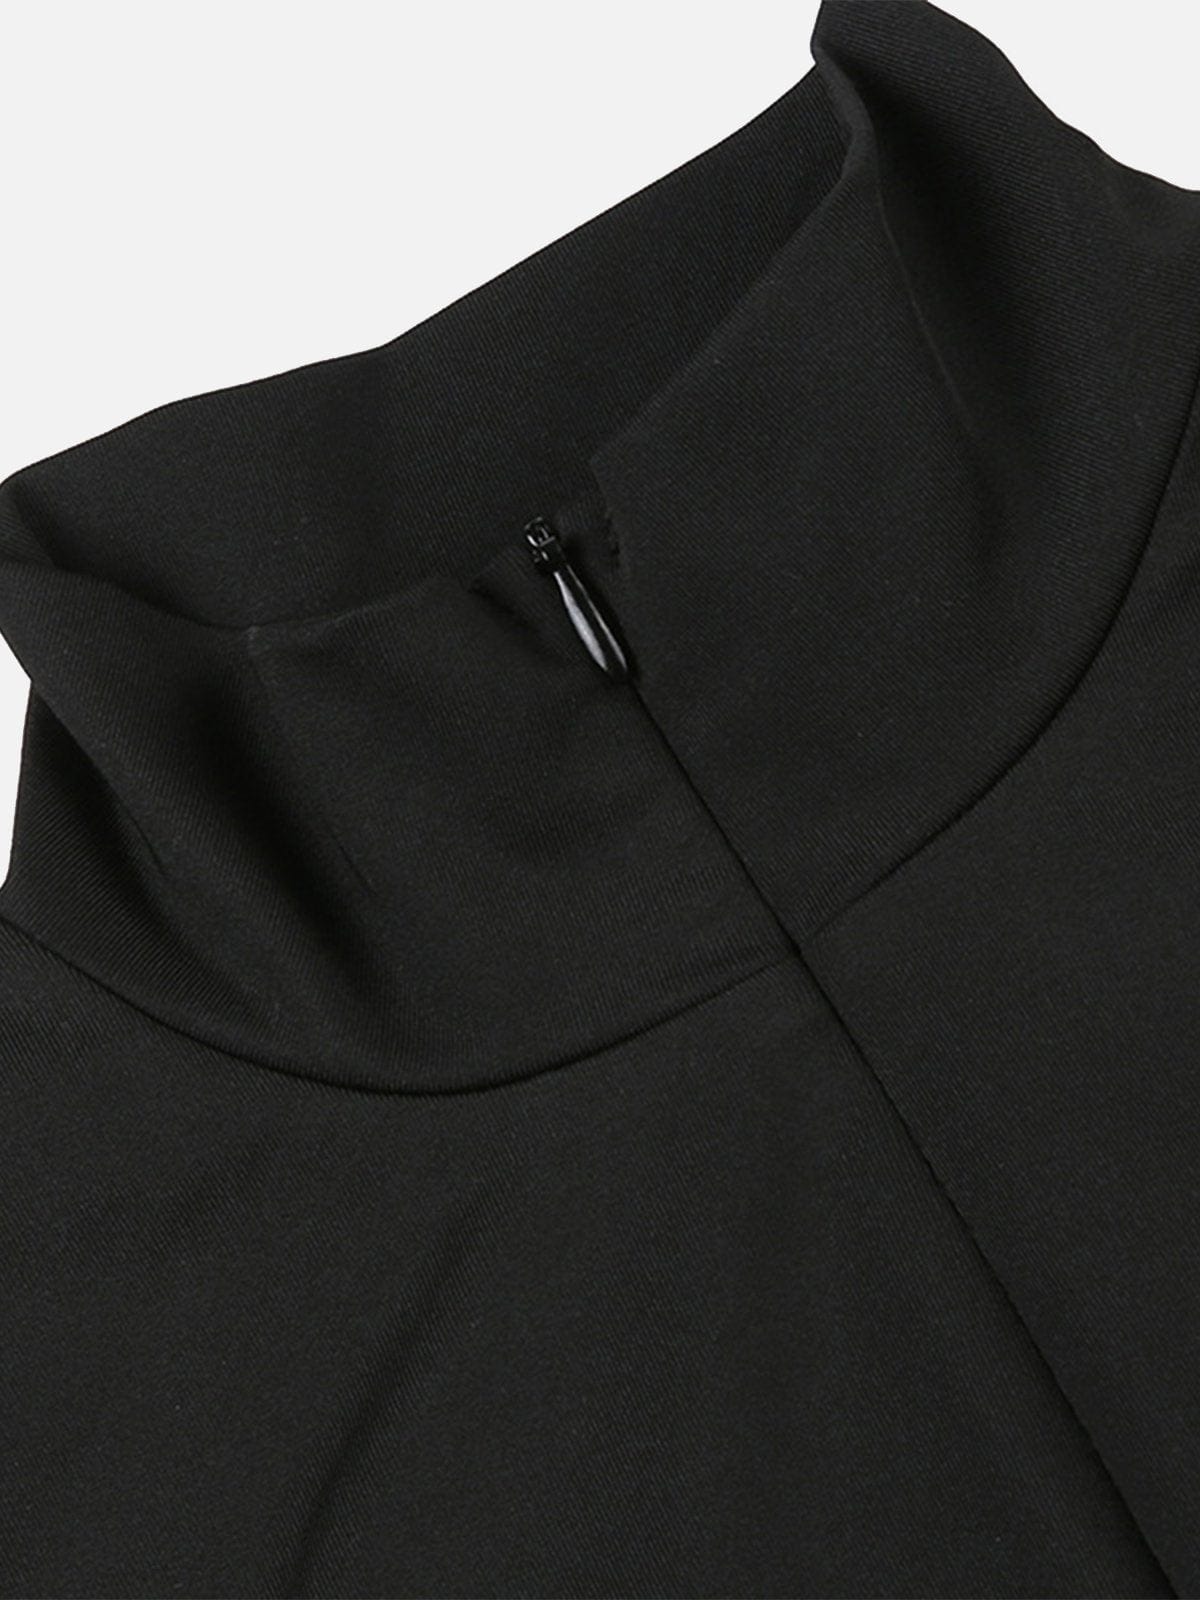 NEV Concealed Zipper Sleeveless Bodysuit